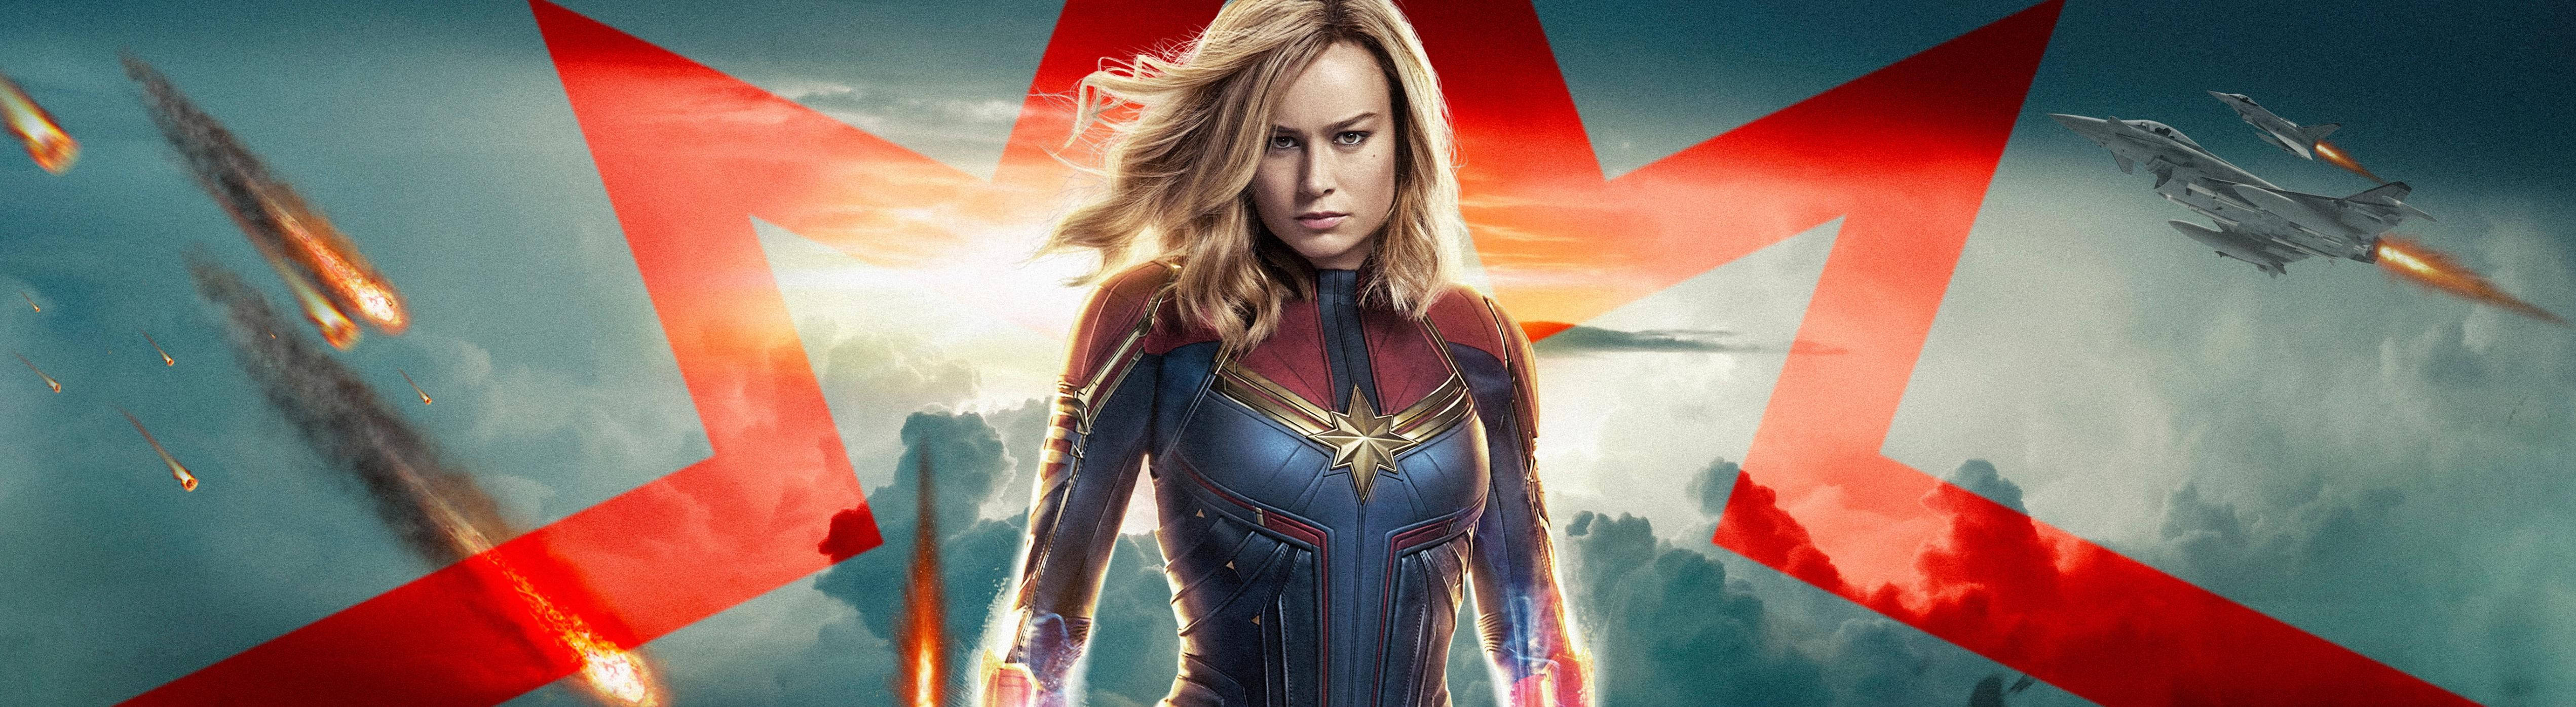 Captain Marvel 5120 X 1440 Wallpaper